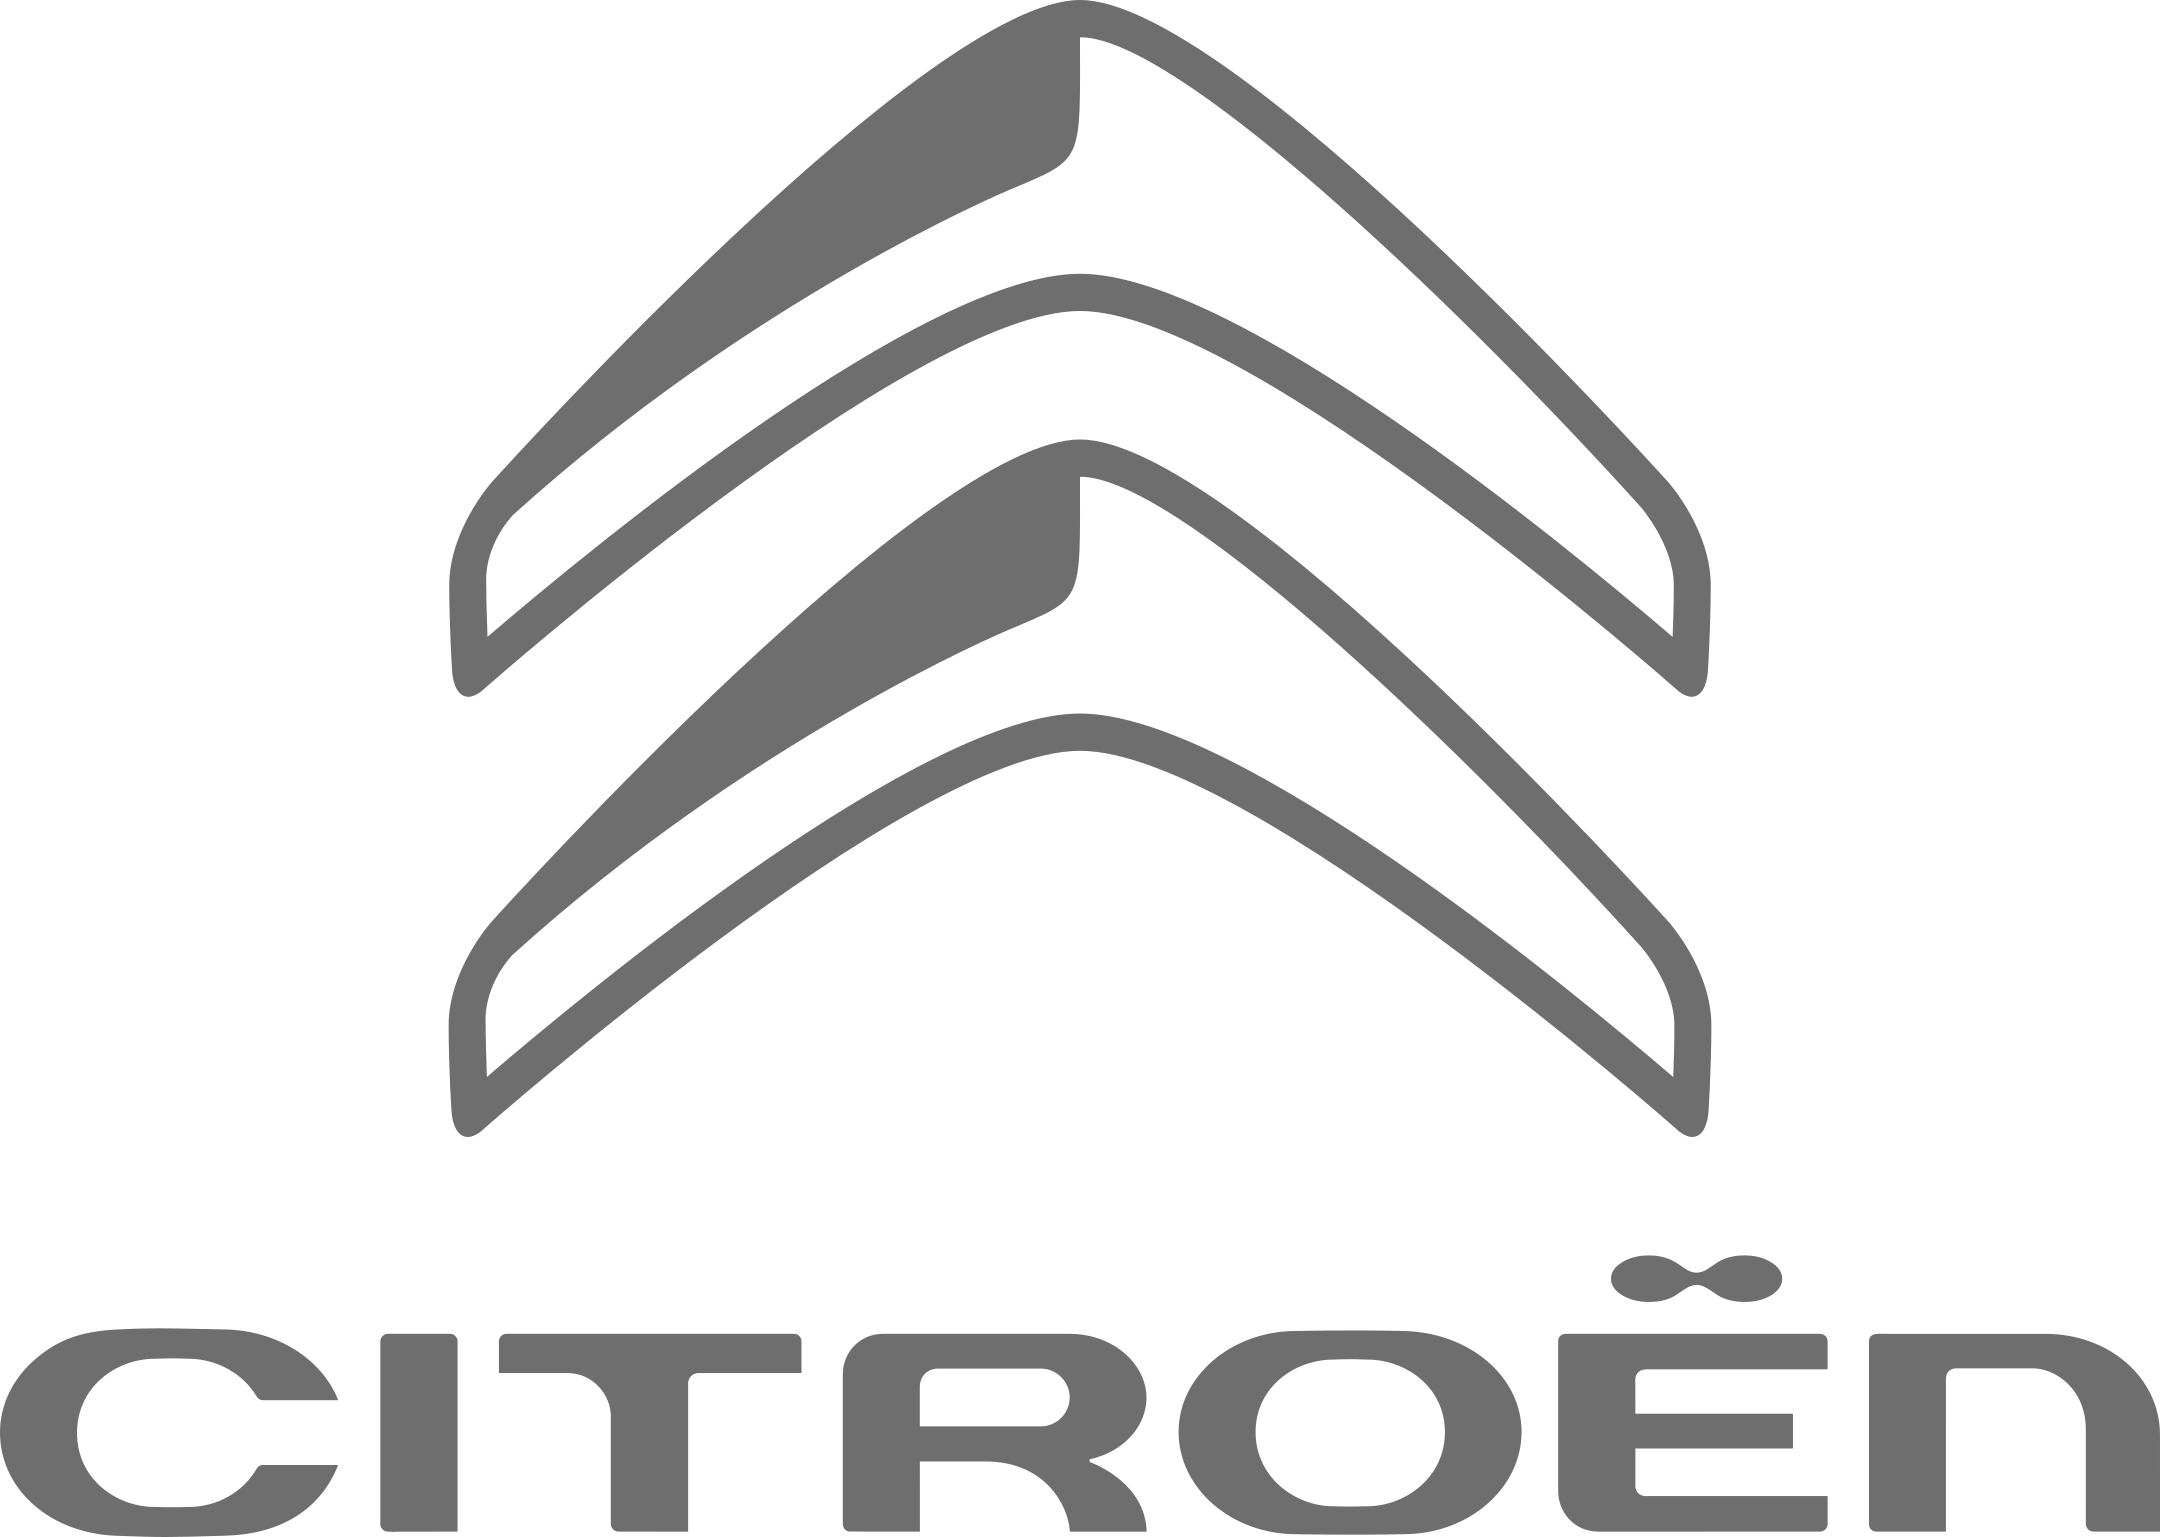 citroen logo 7 - Citroën Logo